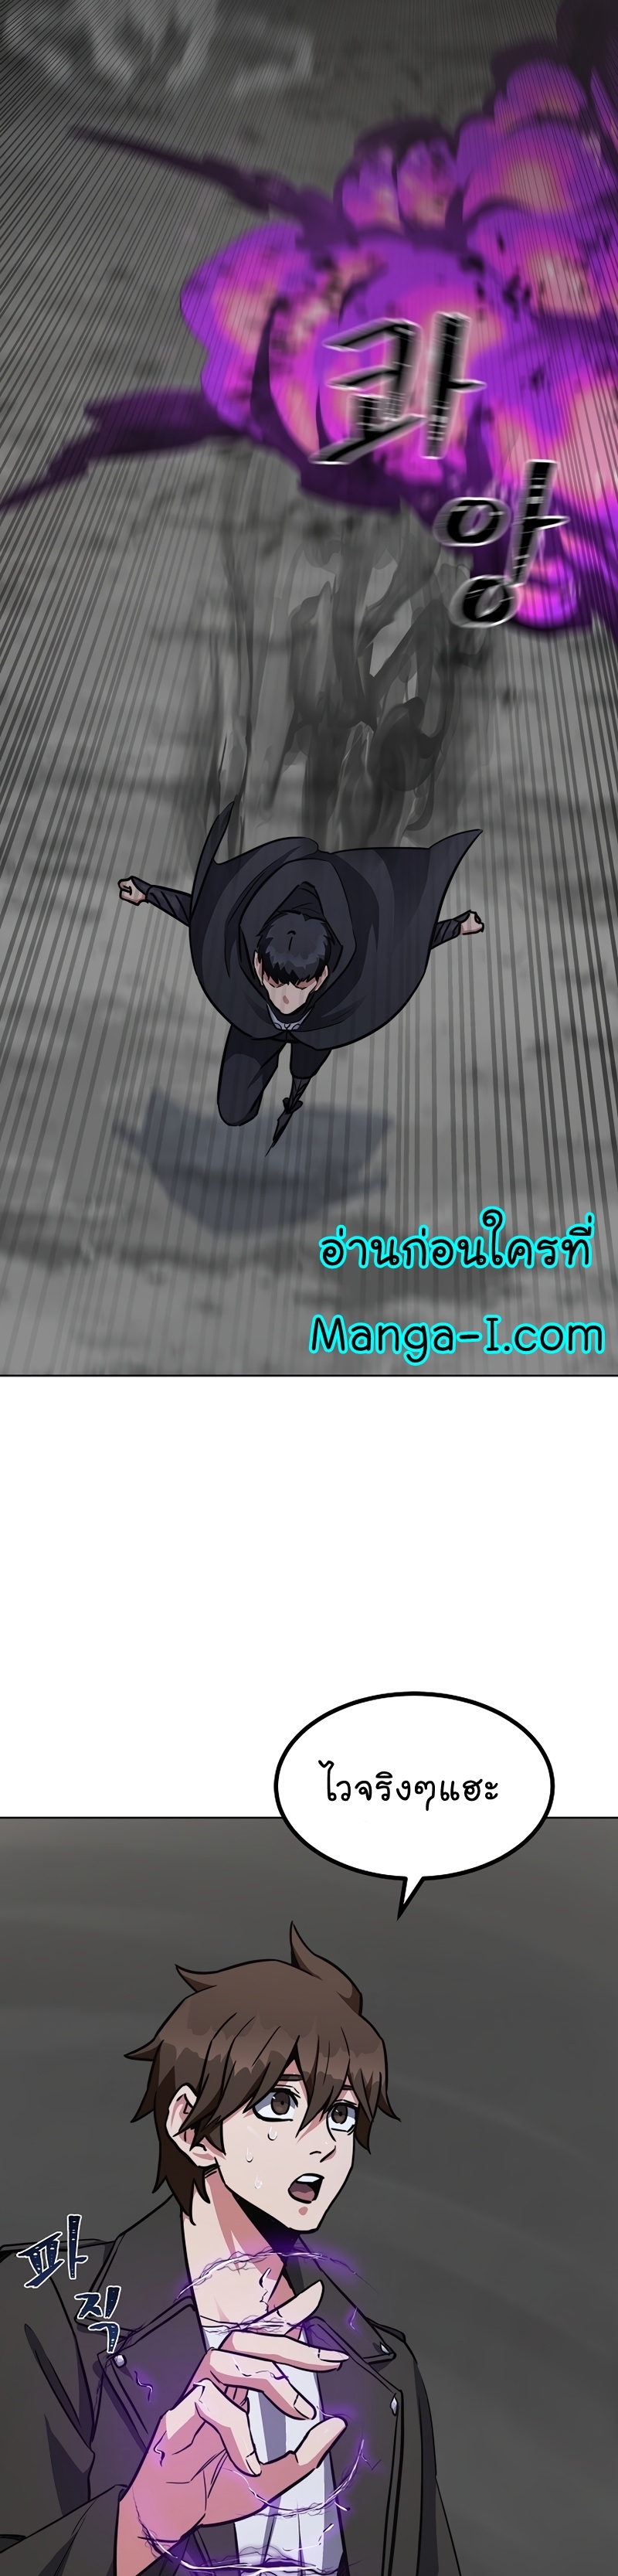 Manga Manhwa Level 1 Player 63 (43)